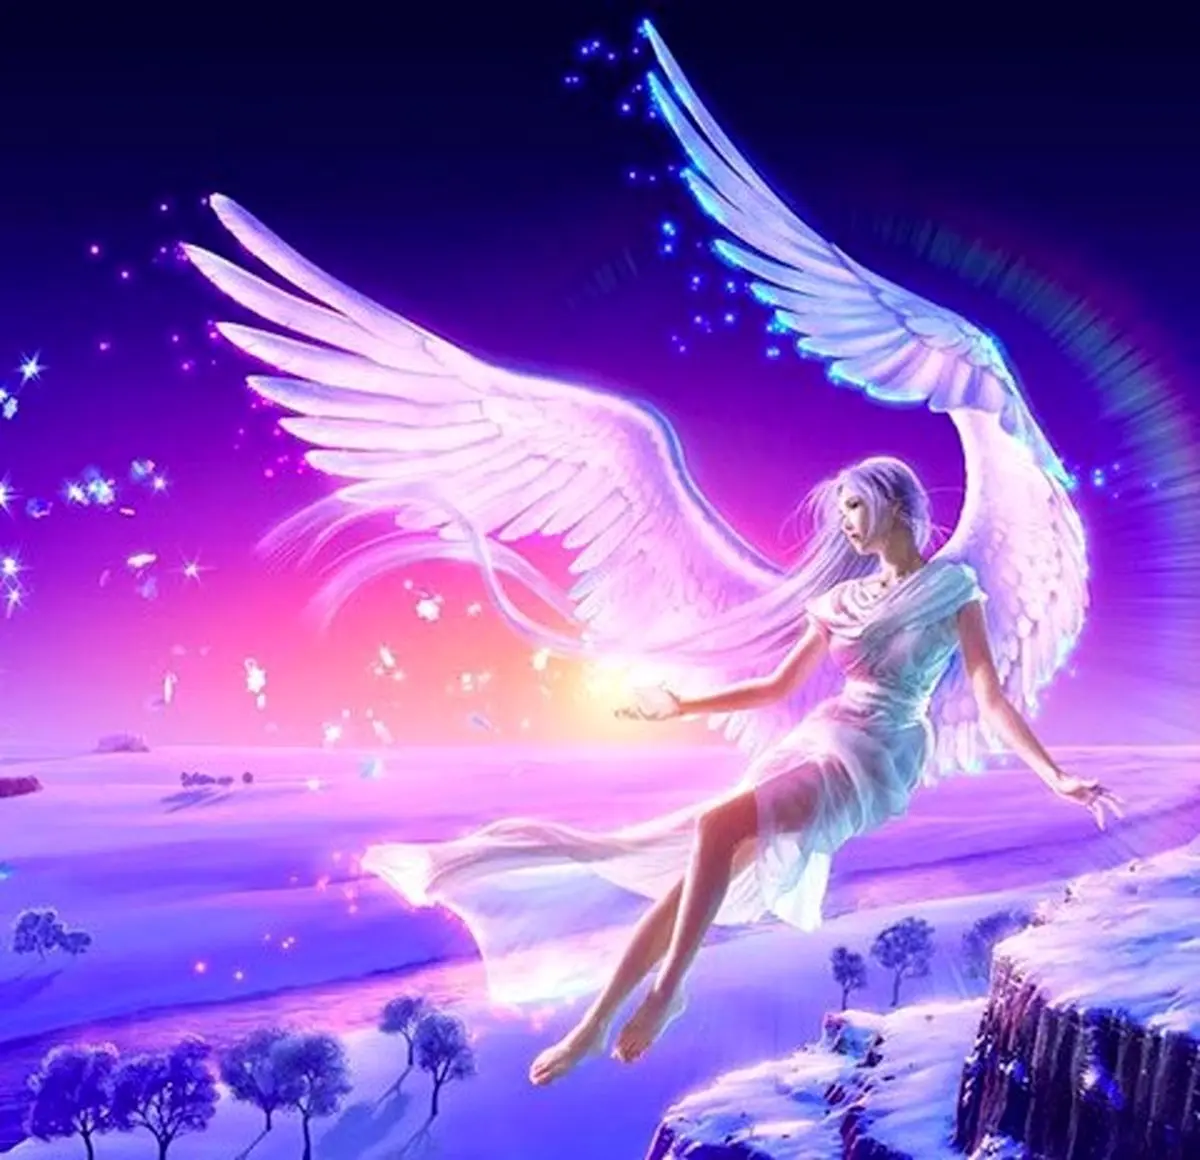 فال فرشتگان 14 آبان ماه | فرشتگان برای شما چه پیام مثبتی دارند؟